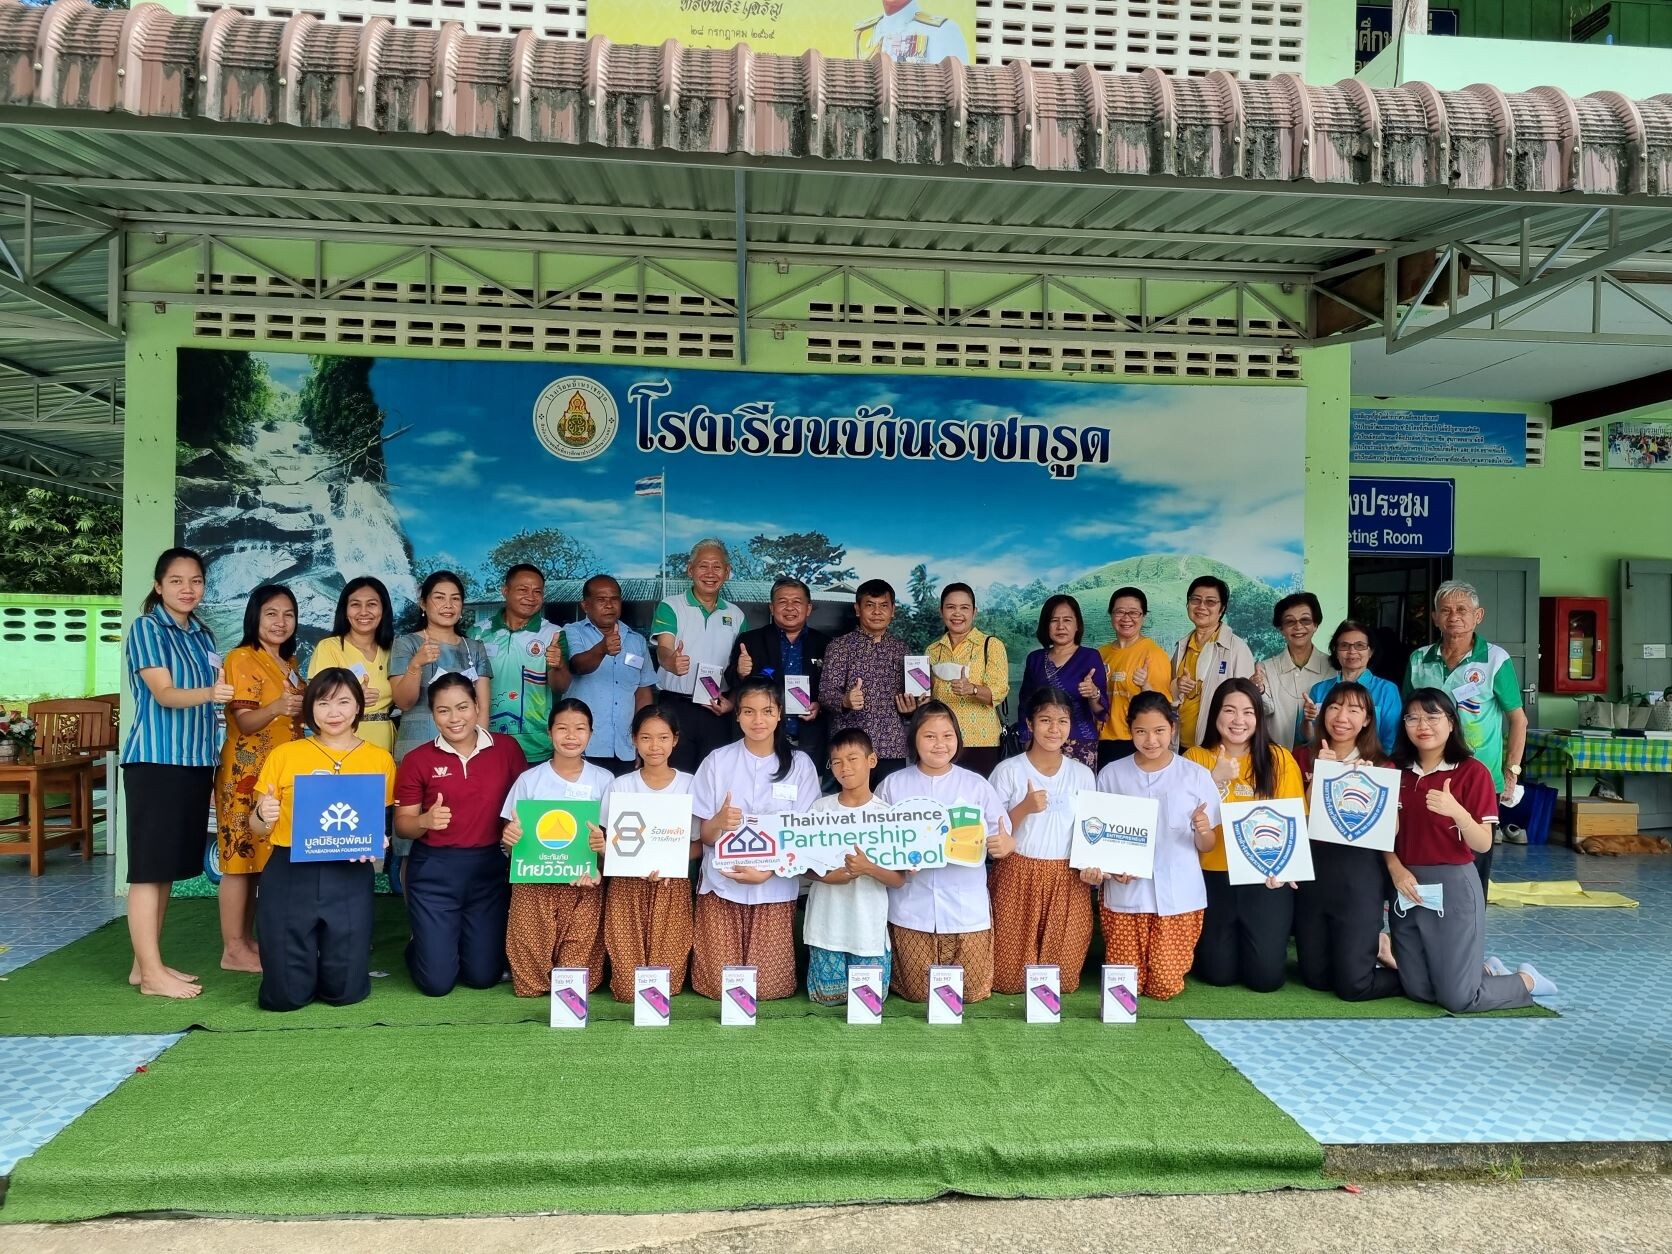 ประกันภัยไทยวิวัฒน์ จับมือ มูลนิธิยุวพัฒน์ สนับสนุน "โรงเรียนร่วมพัฒนา" โครงการกระทรวงศึกษาธิการผนึกภาคเอกชน